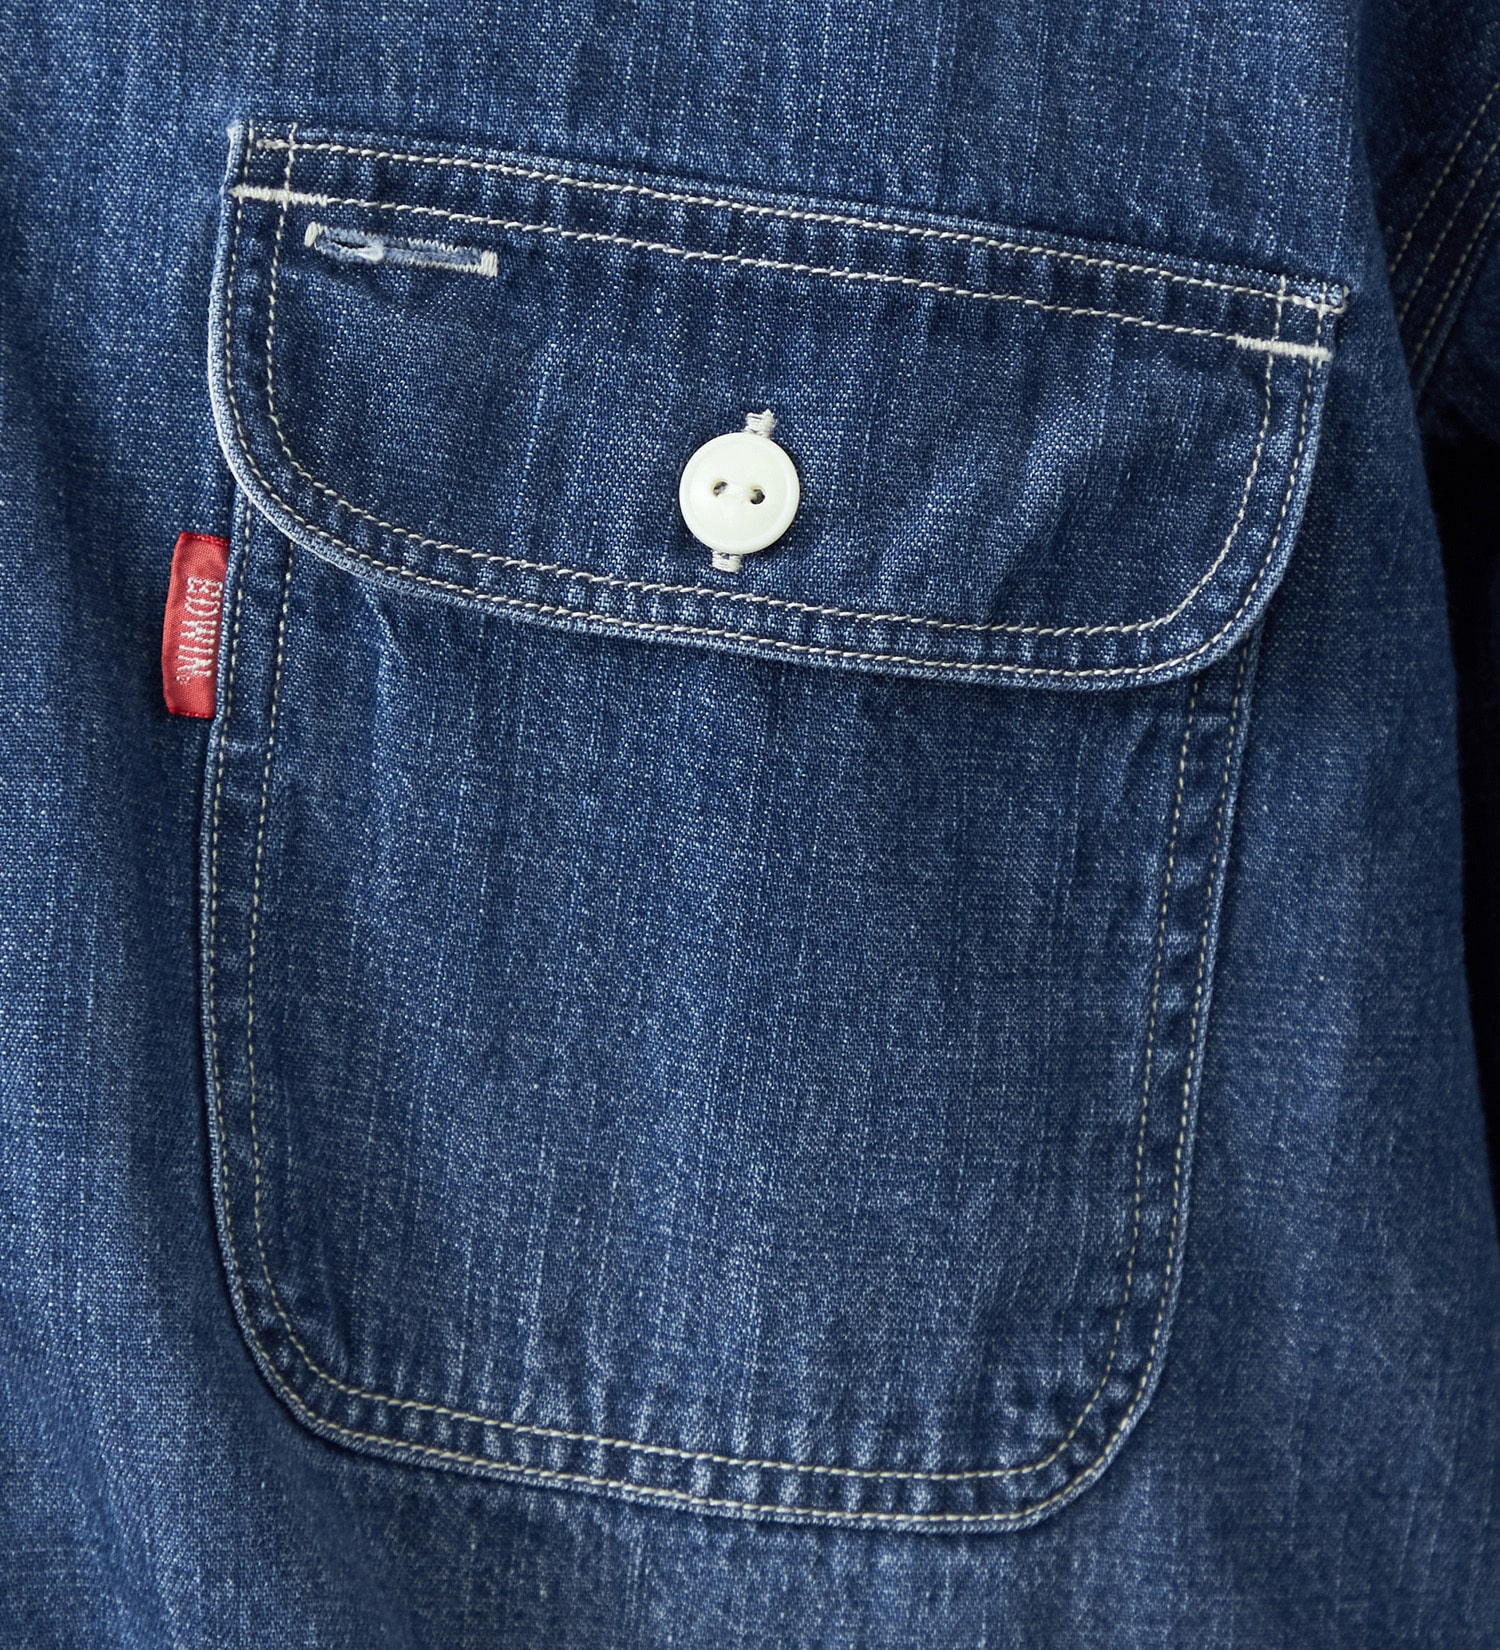 EDWIN(エドウイン)のヴィンテージワークシャツ 長袖|トップス/シャツ/ブラウス/メンズ|中色ブルー